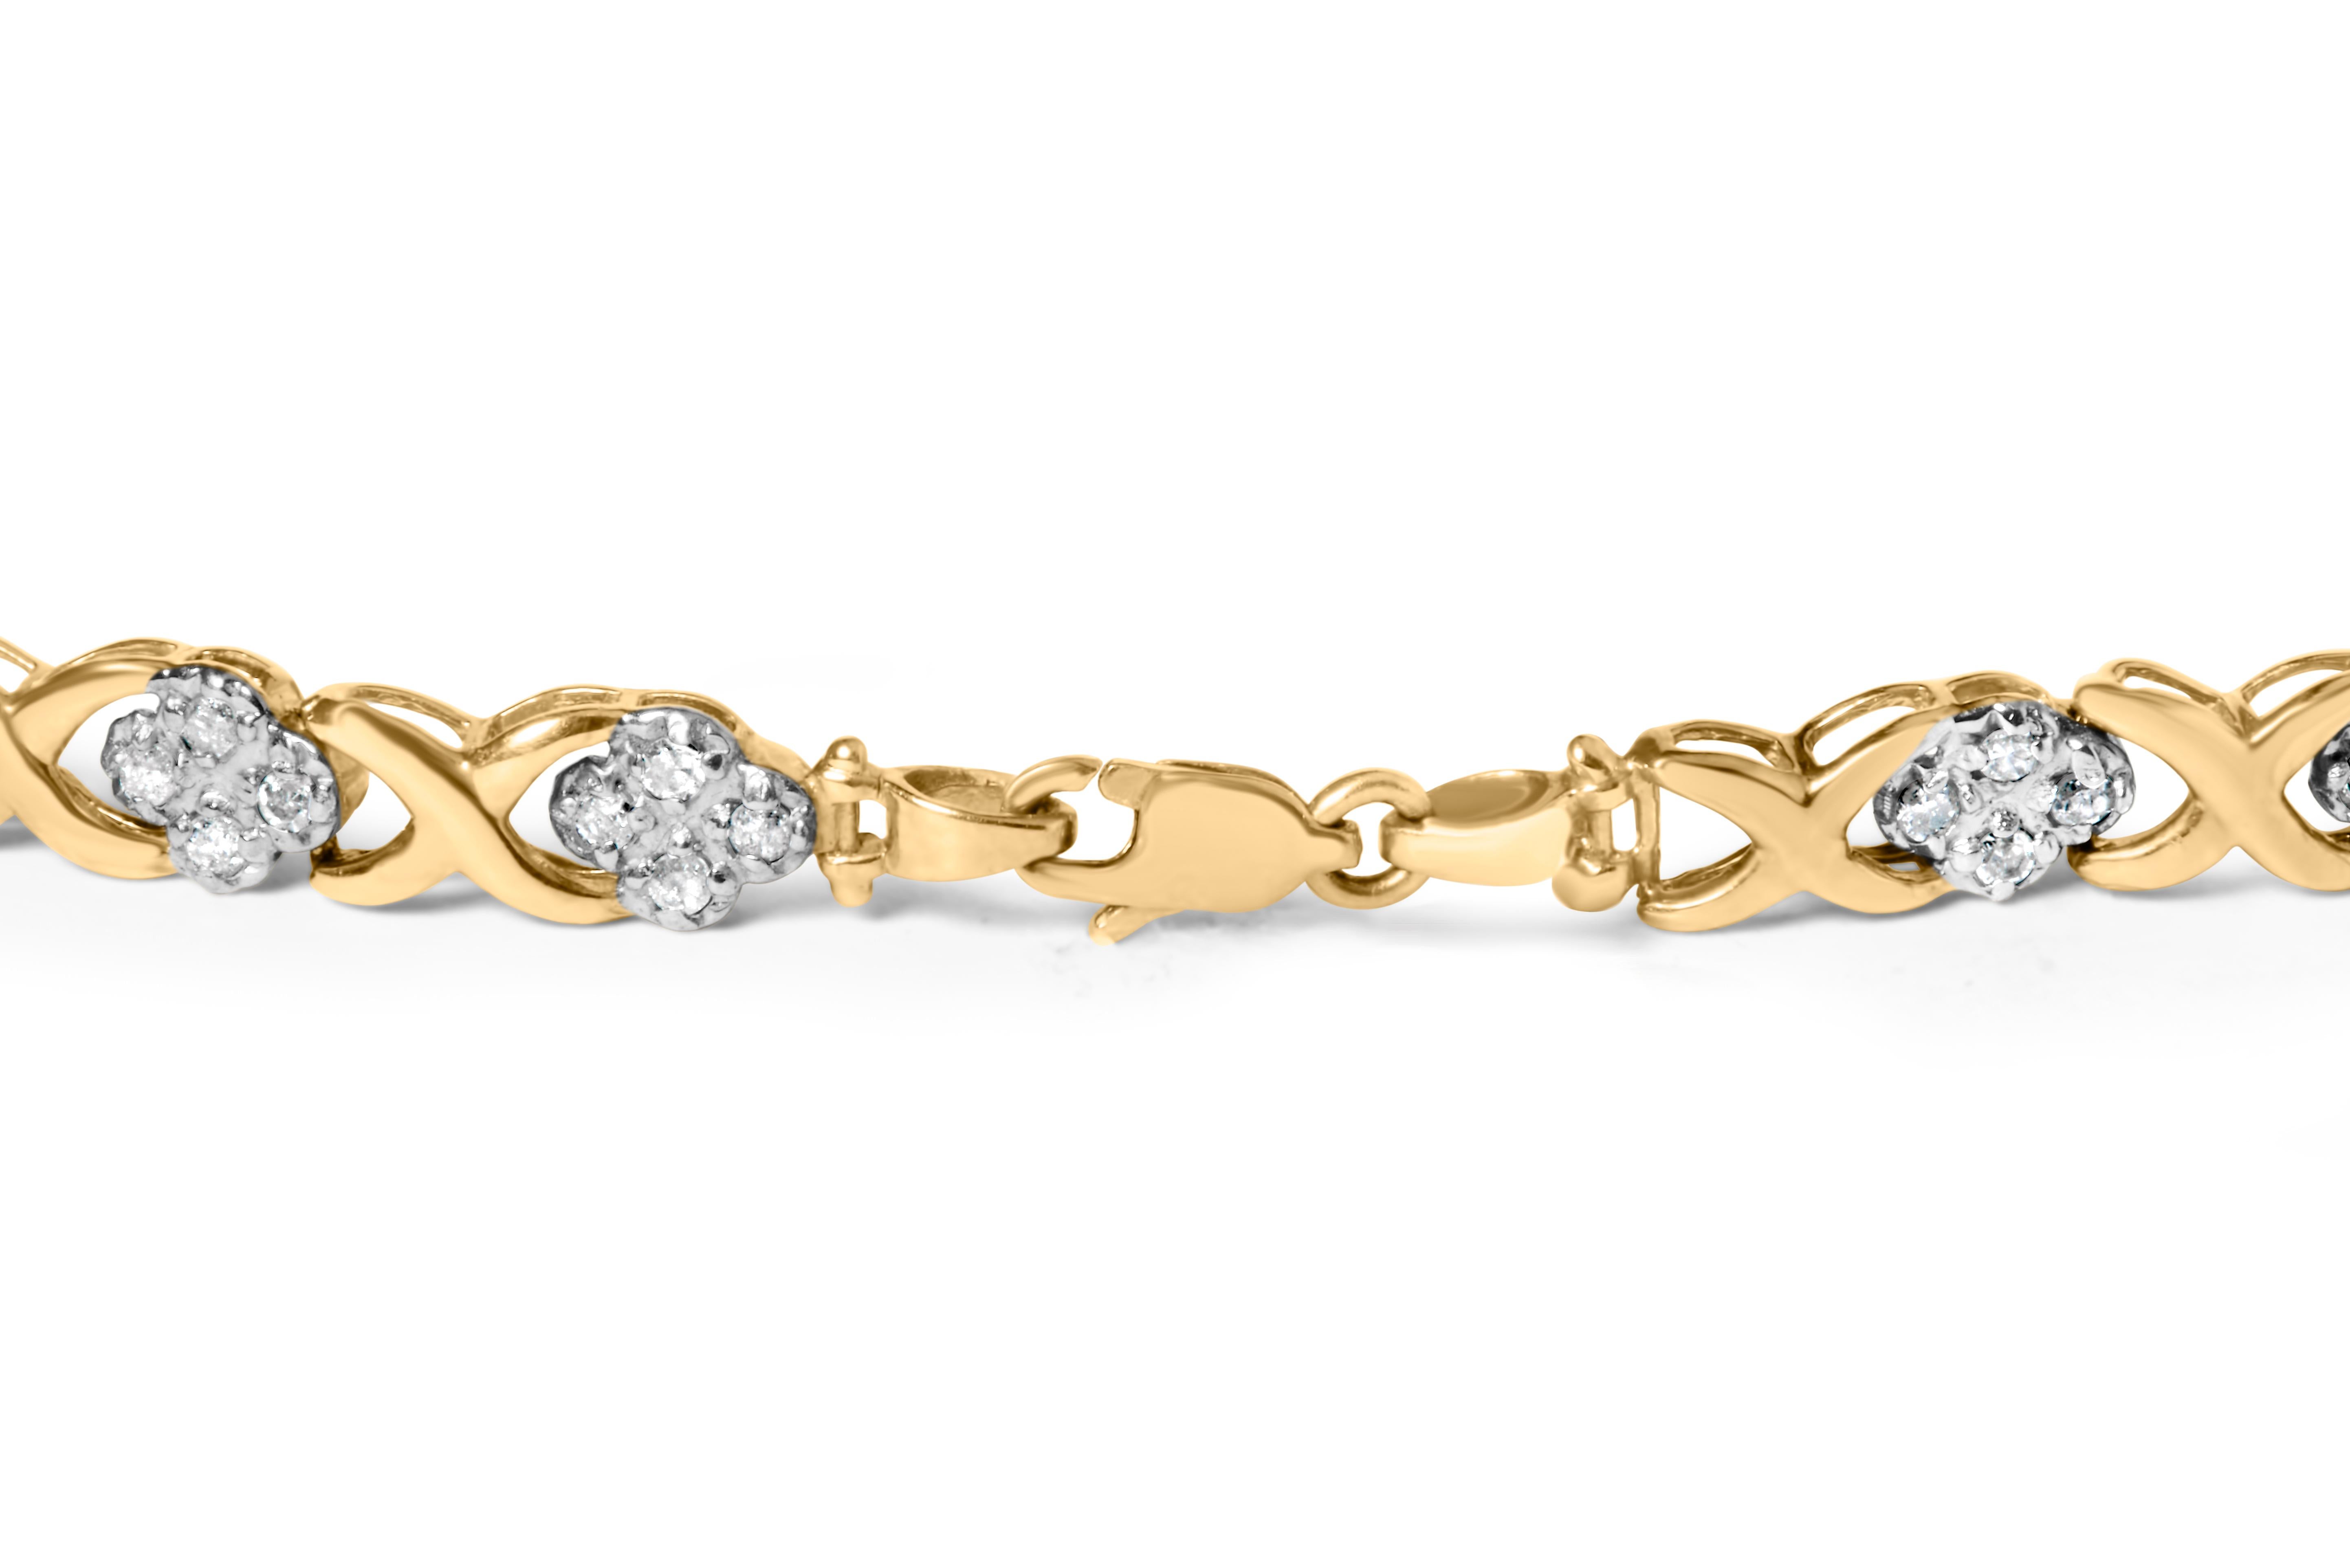 Elegant et intemporel, ce magnifique bracelet de tennis en or jaune 10 carats présente un poids total de 1 carat de diamants ronds, de taille rose et de qualité promo, soit 64 pierres au total. Les diamants de qualité promo, taillés en rose, sont de